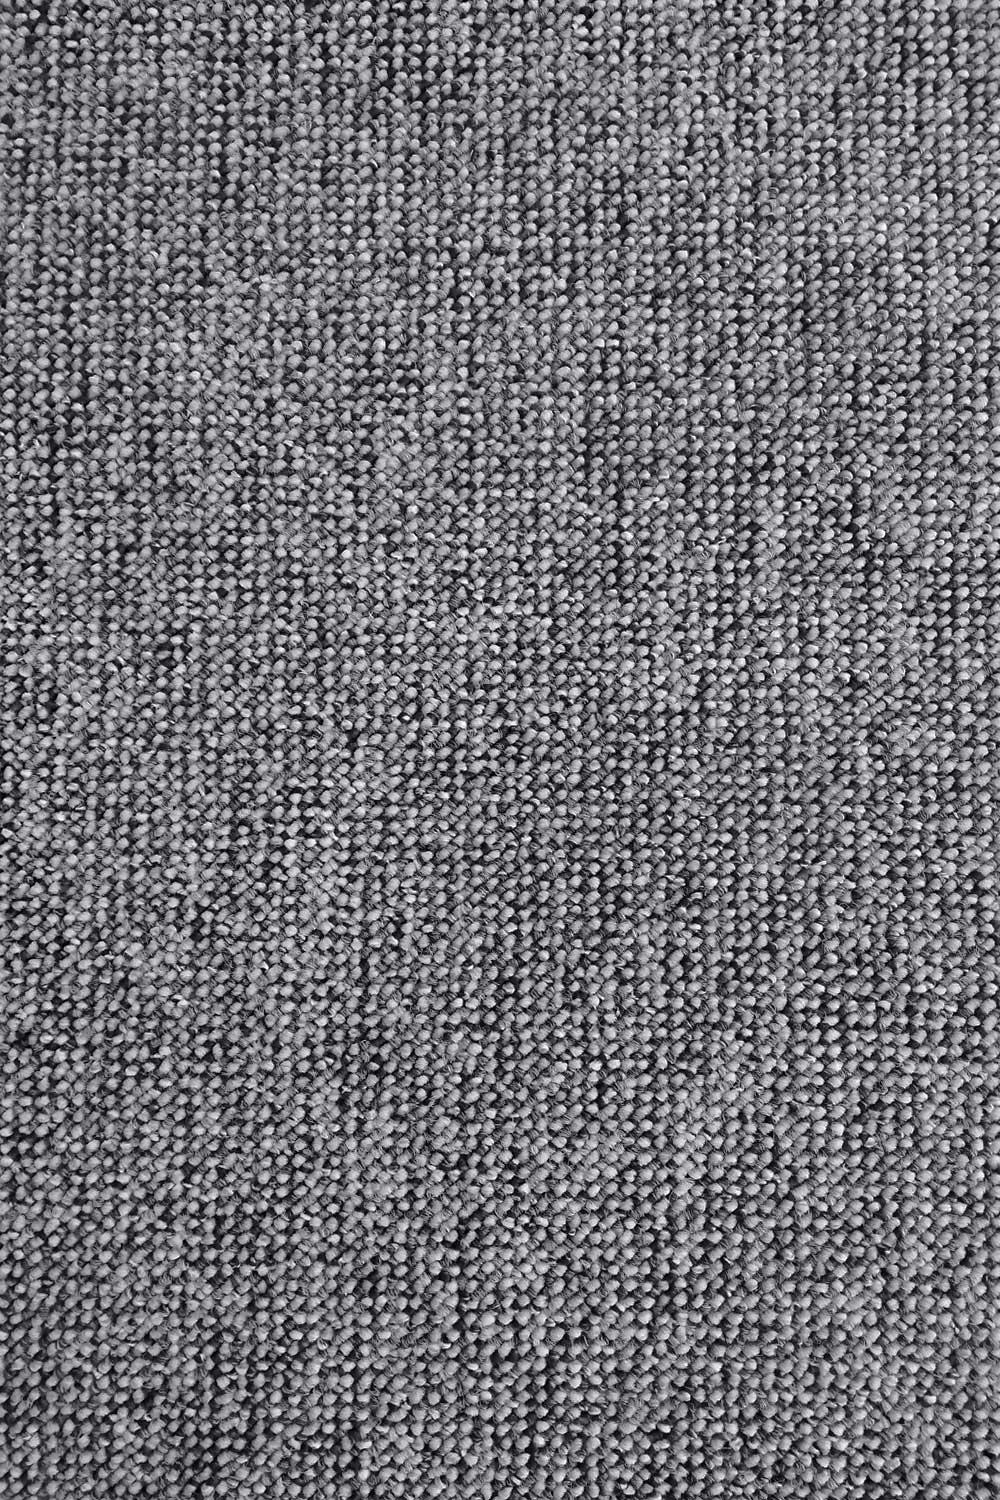 Metrážny koberec PALERMO 4745 Green